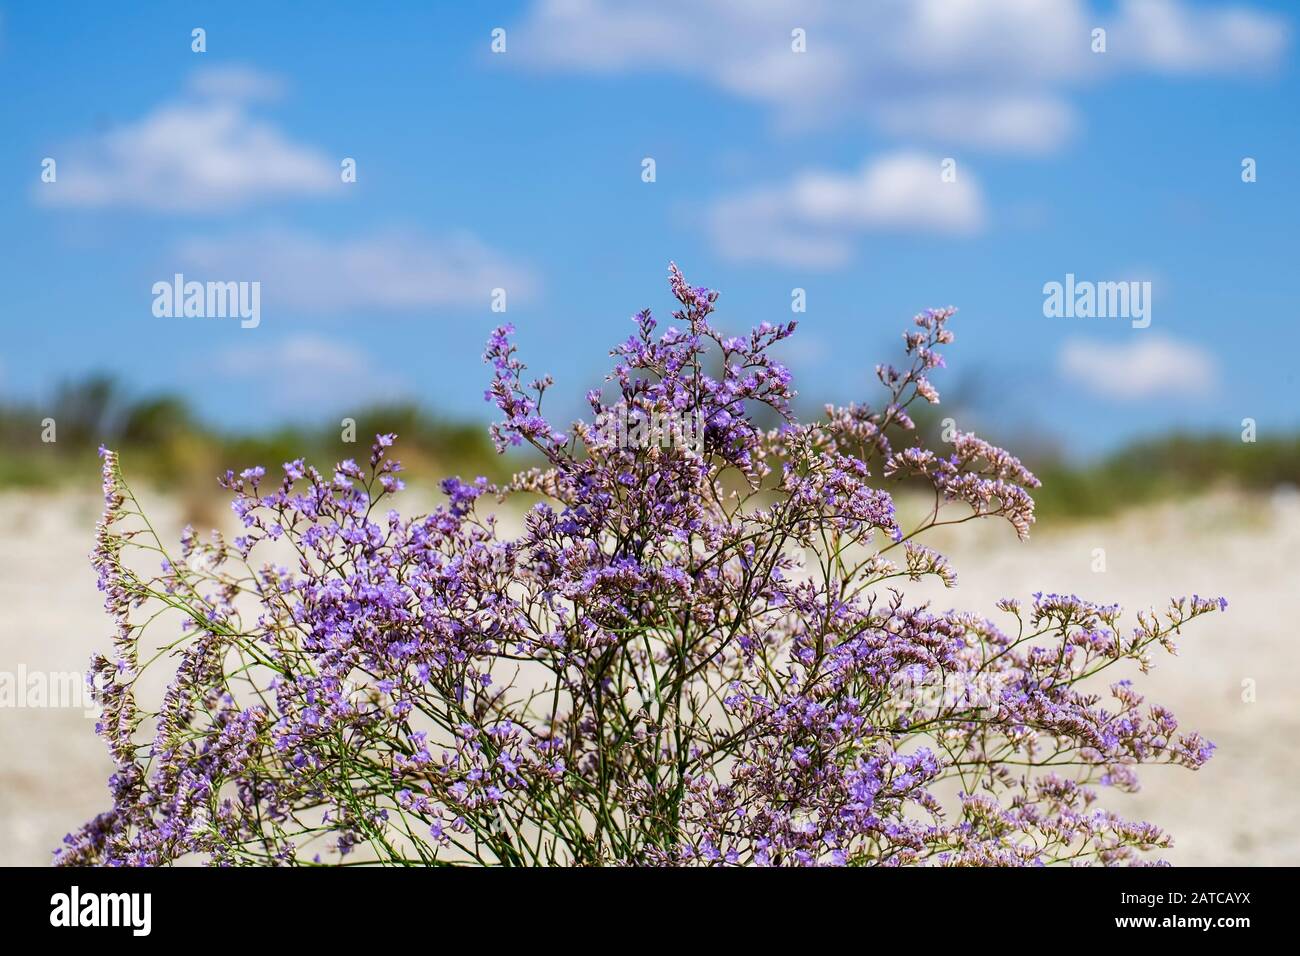 Purple flowers of sea-lavender (Limonium gmelinii) Stock Photo